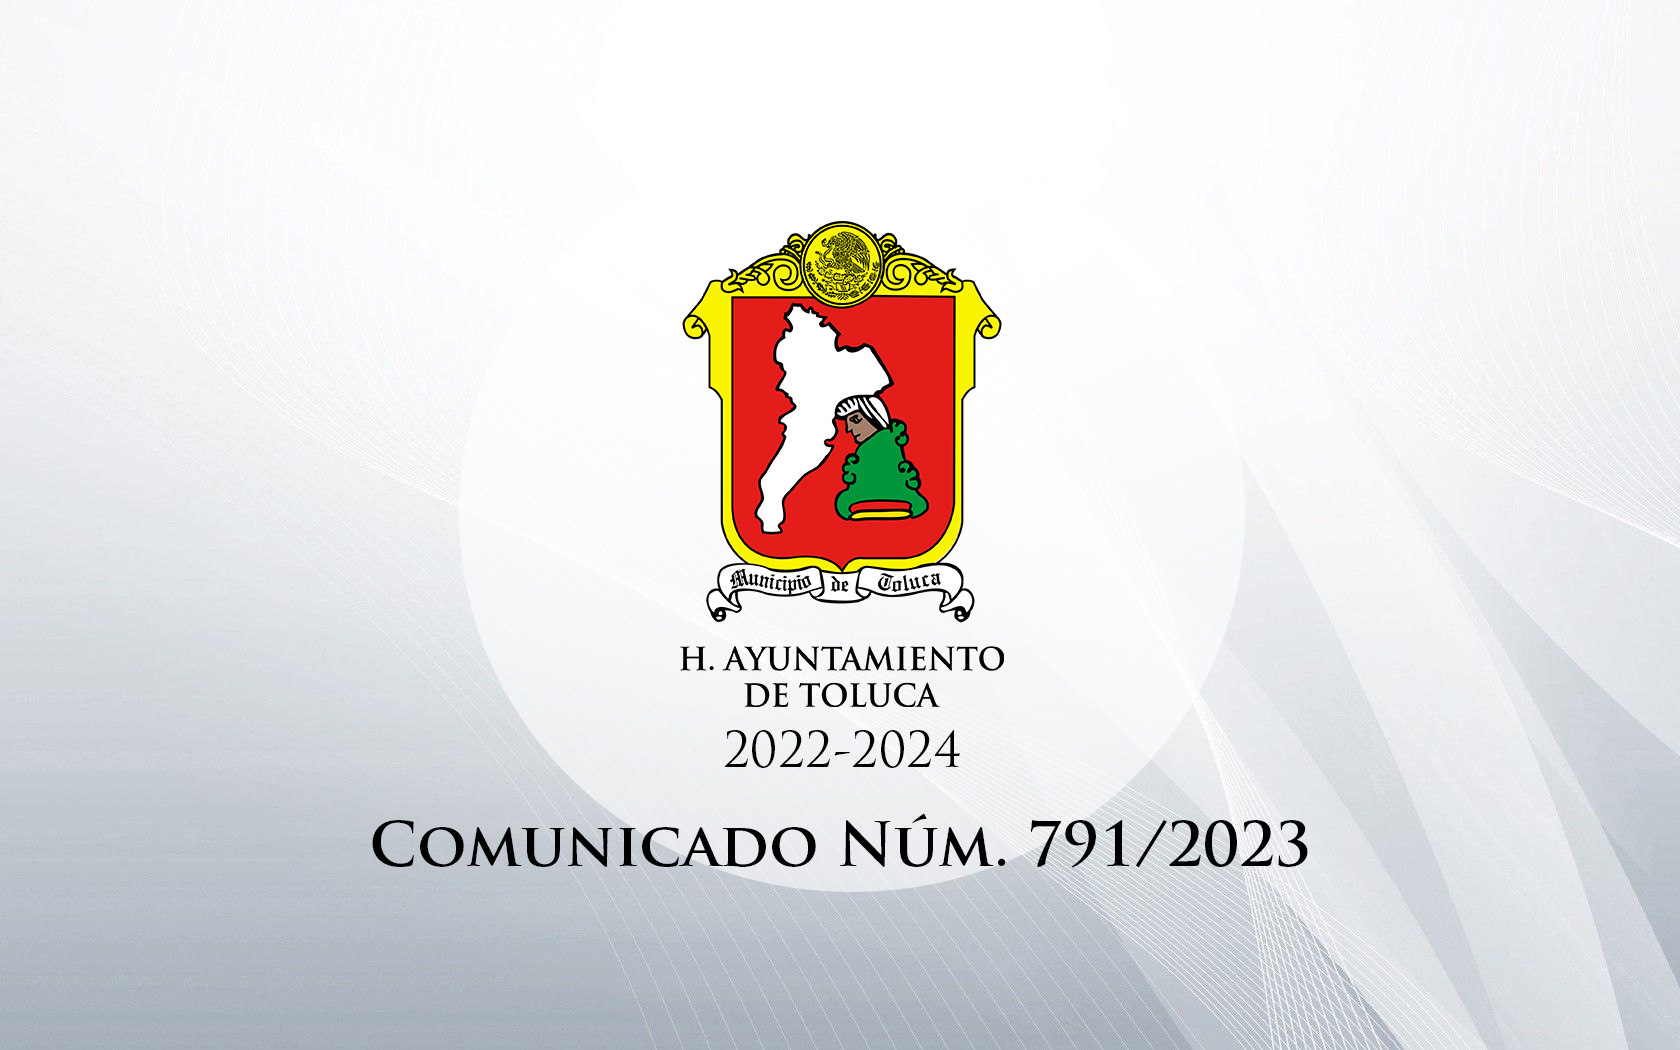 Comunicado Núm. 791/2023